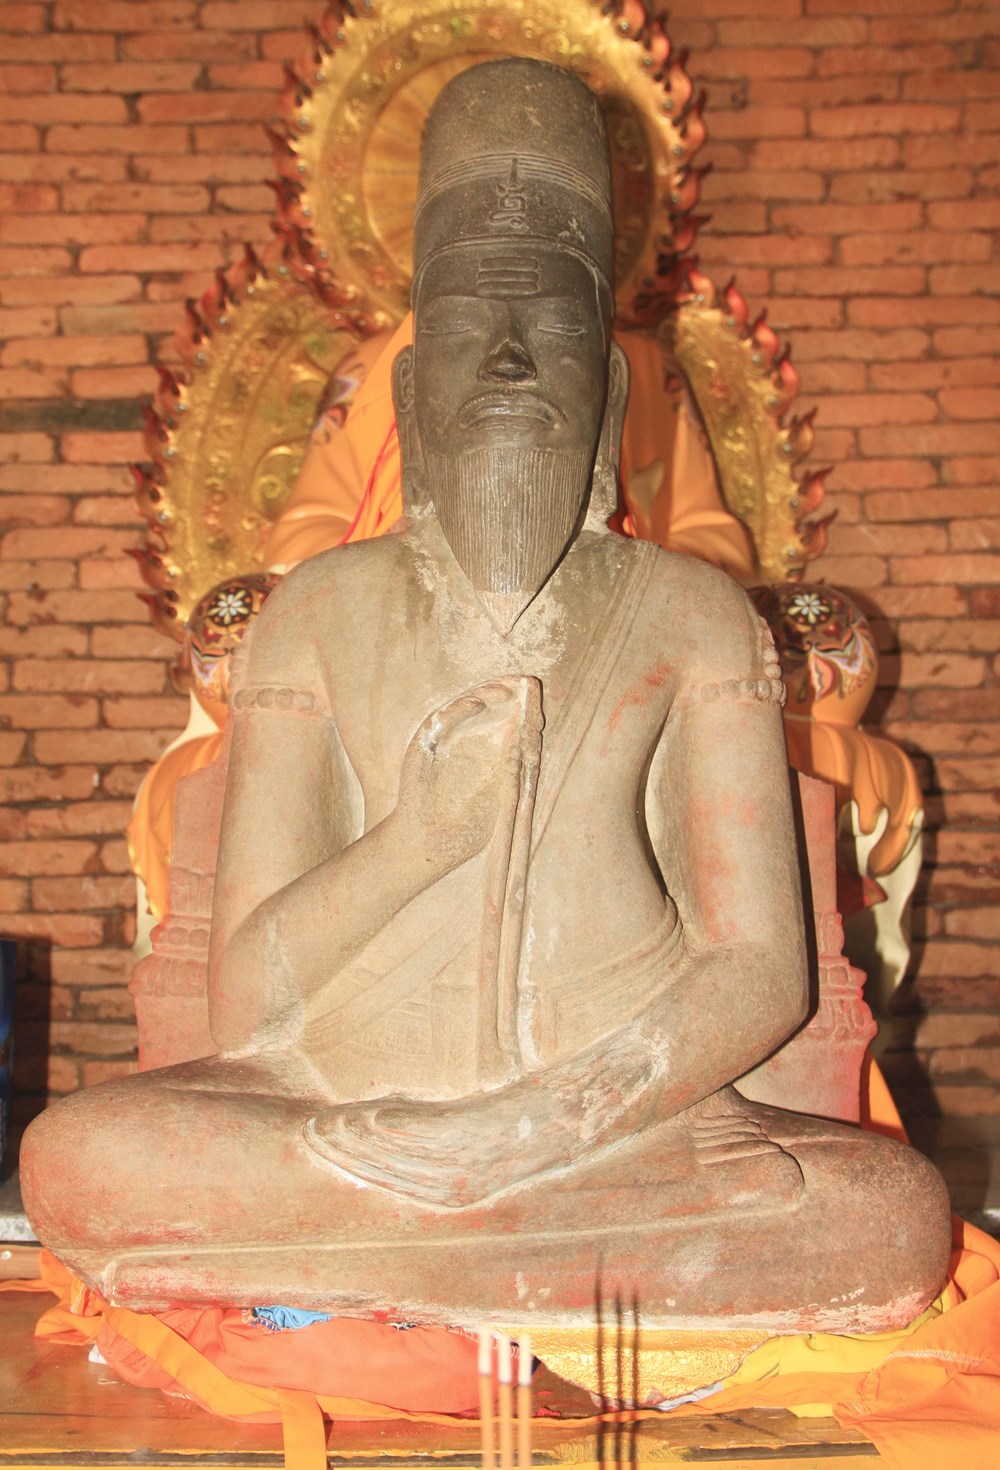 Về bán đảo Phương Mai ngắm bảo vật quốc gia “Phật lồi” - ảnh 1